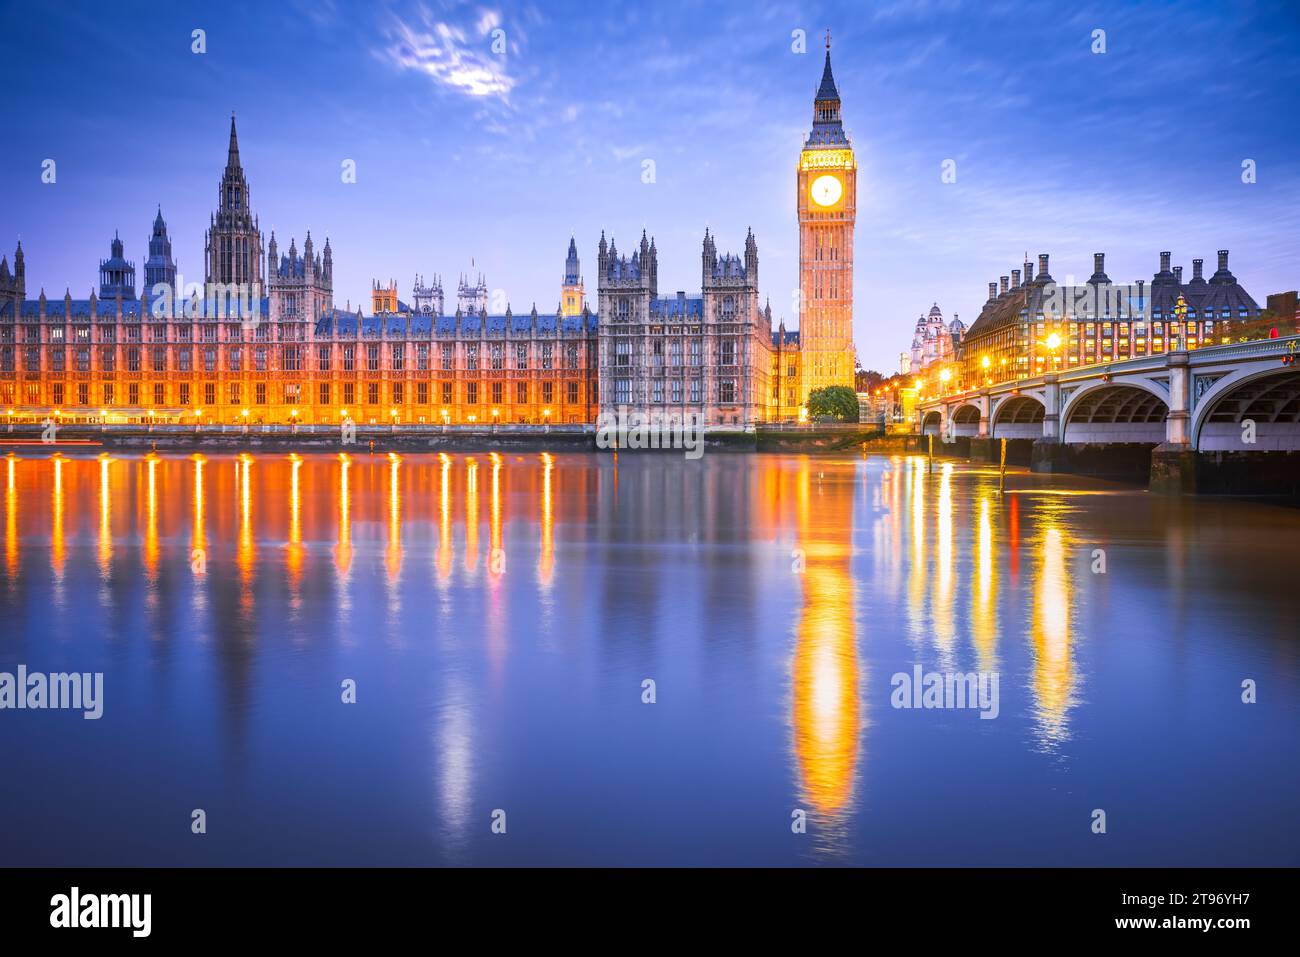 Londres, Royaume-Uni. Westminster Bridge, Big Ben et bâtiment de la Chambre des communes en arrière-plan, voyage monument anglais à l'heure bleue. Banque D'Images